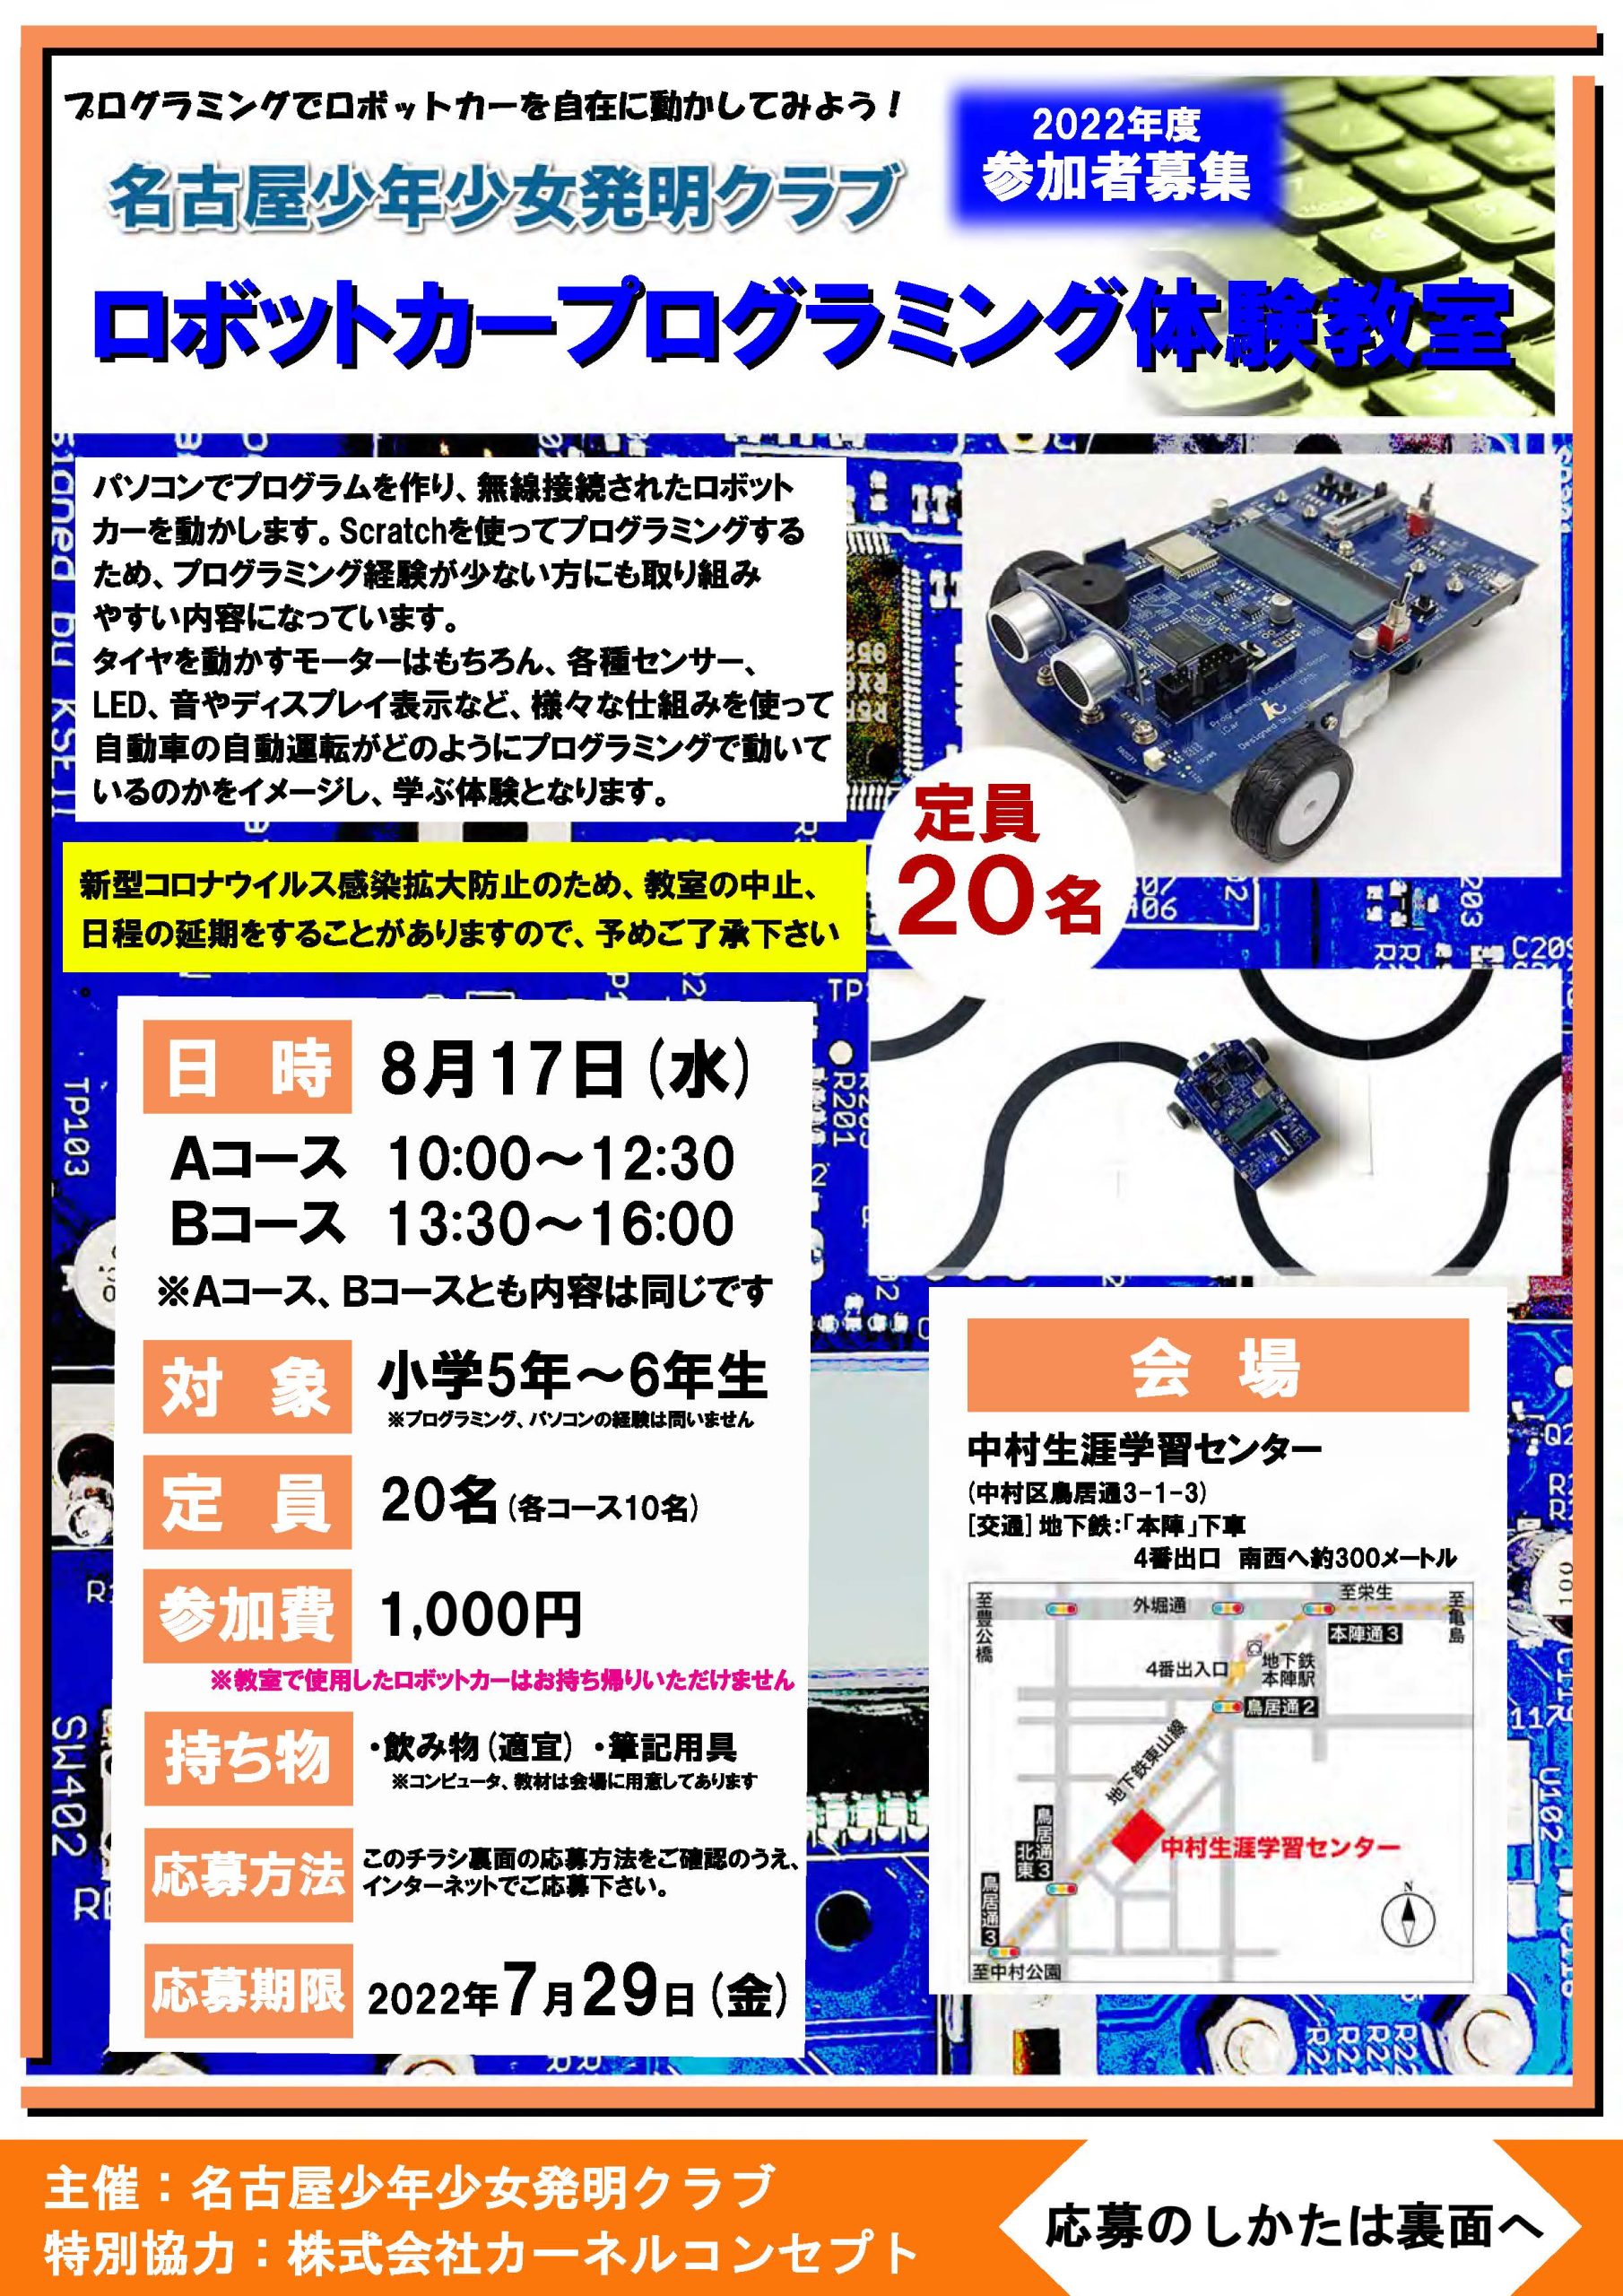 ロボットカープログラミング体験教室 | 名古屋少年少女発明クラブ 公式 